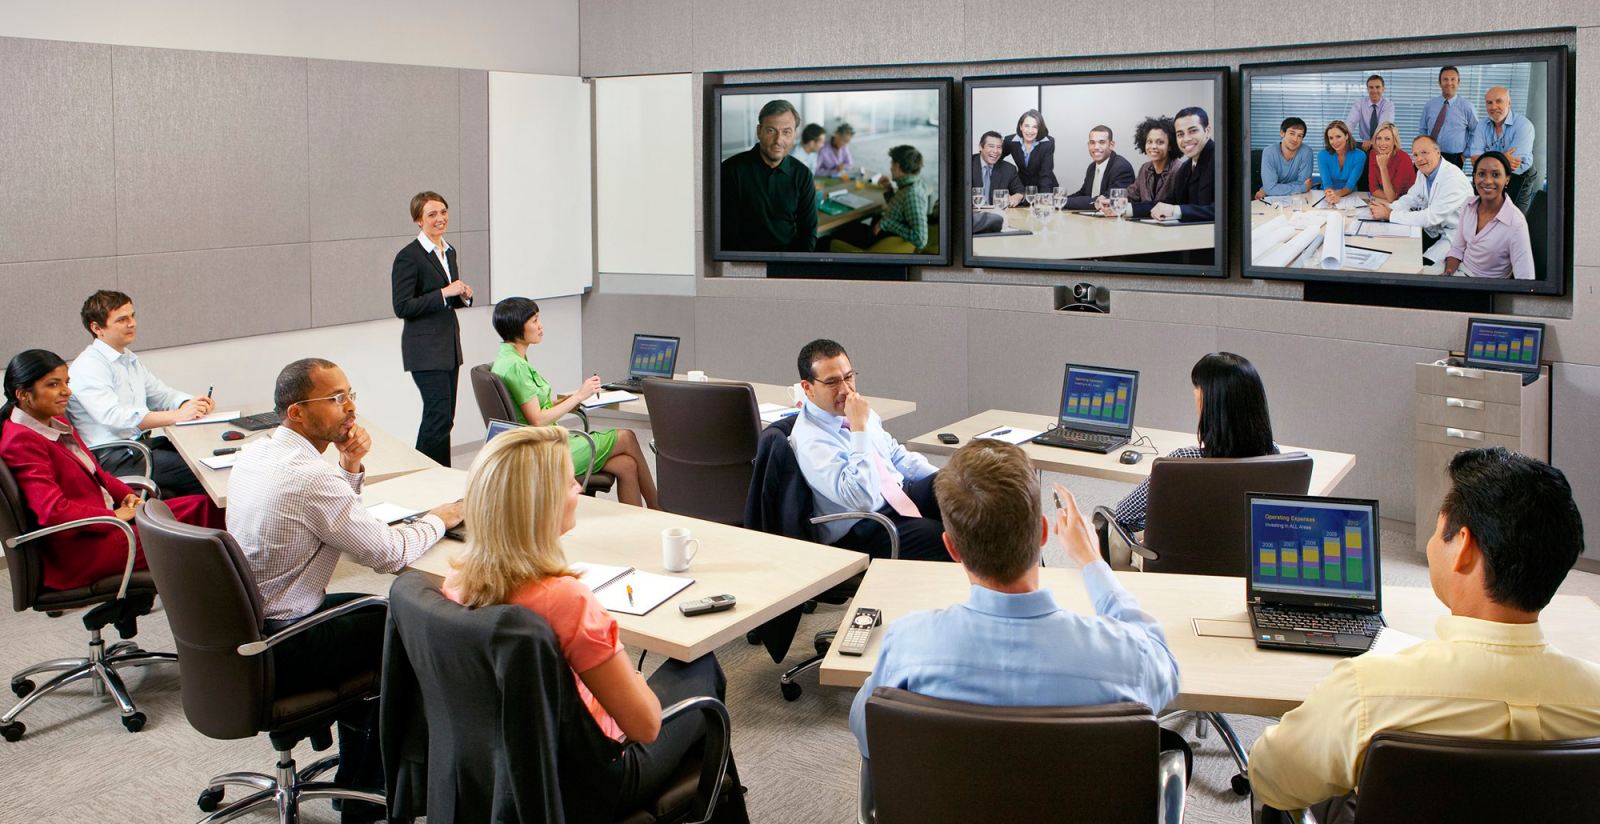 Giải pháp Hội nghị truyền hình họp trực tuyến (Video Conference) -